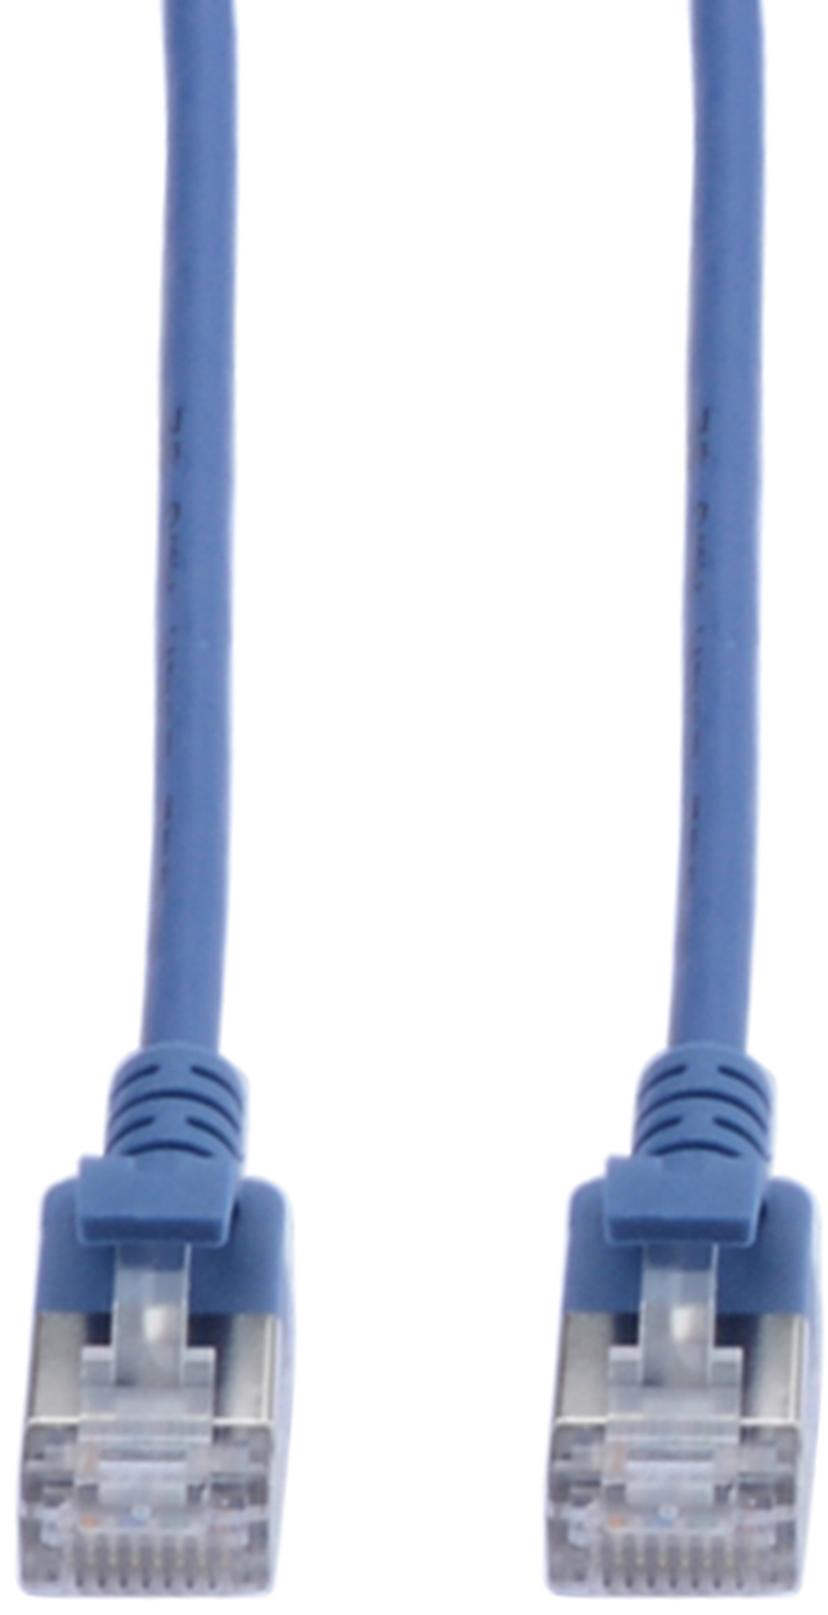 Prokord TP-Cable U/FTP CAT.6A Slim Lszh RJ45 0.5m Blue RJ-45 RJ-45 CAT 6a 0.5m Sininen